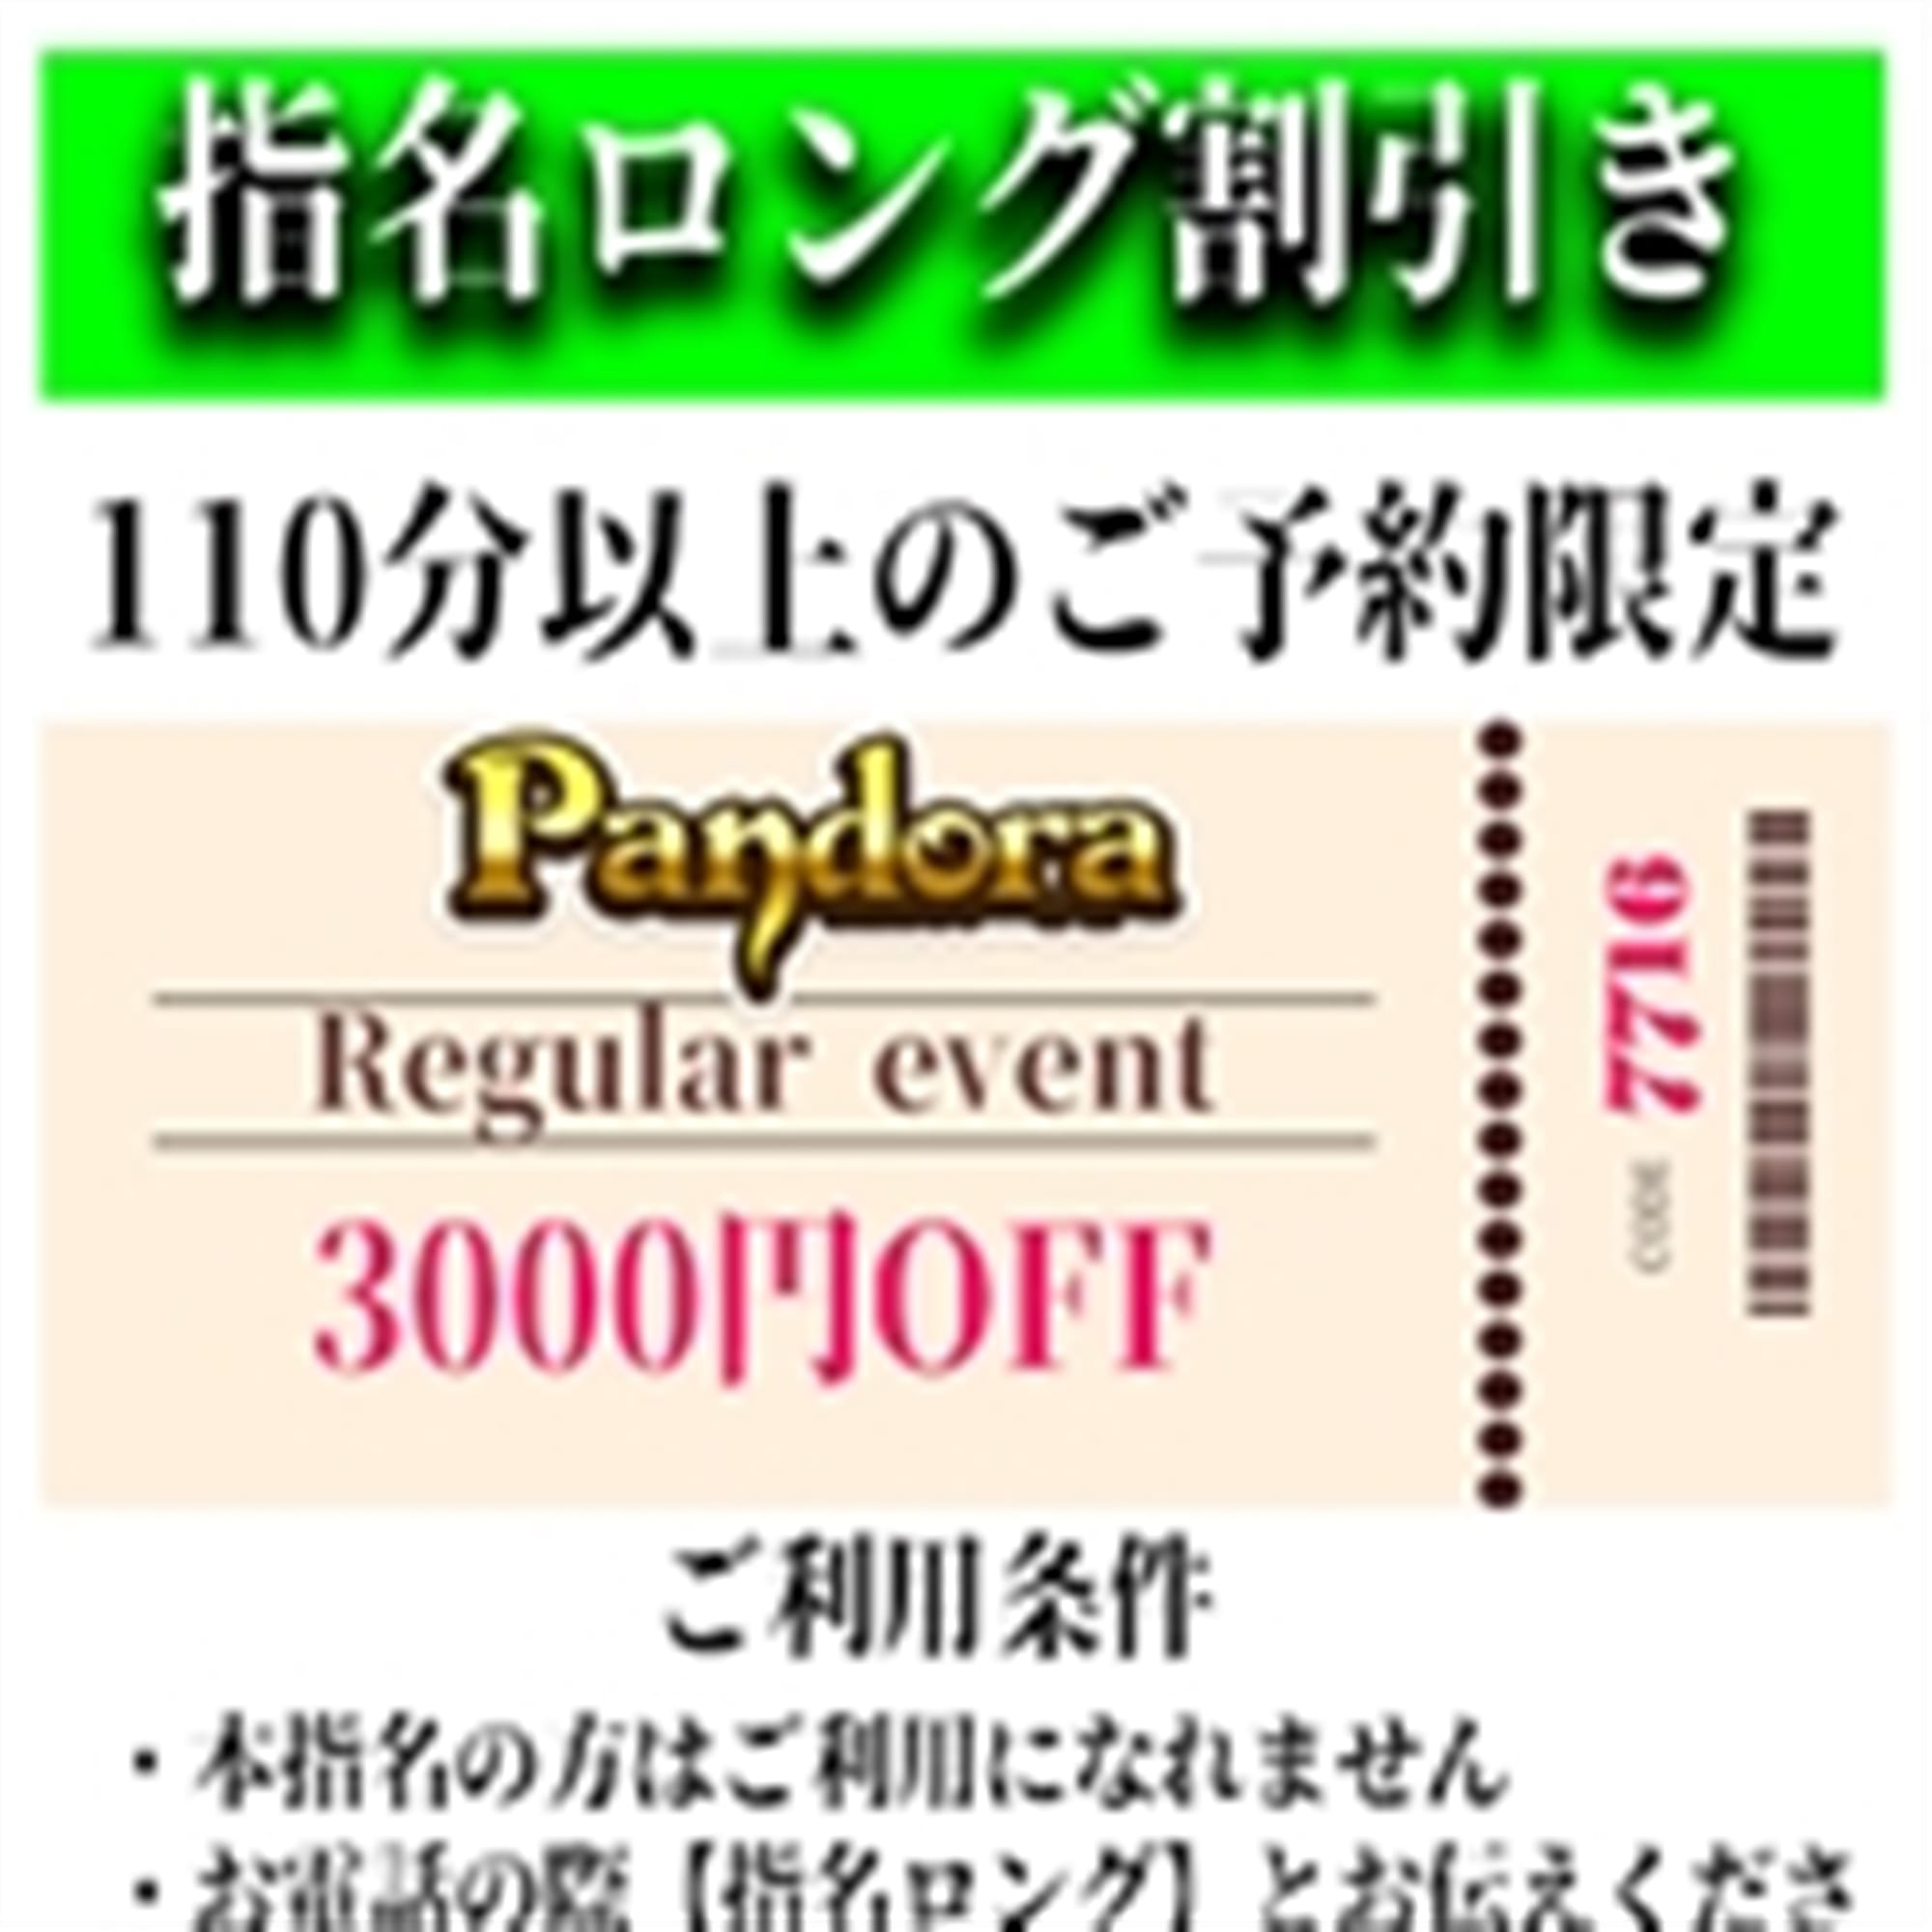 「ご指名のお客様も遊べるロングコース割引」03/29(金) 19:36 | Pandora(パンドラ)新潟のお得なニュース